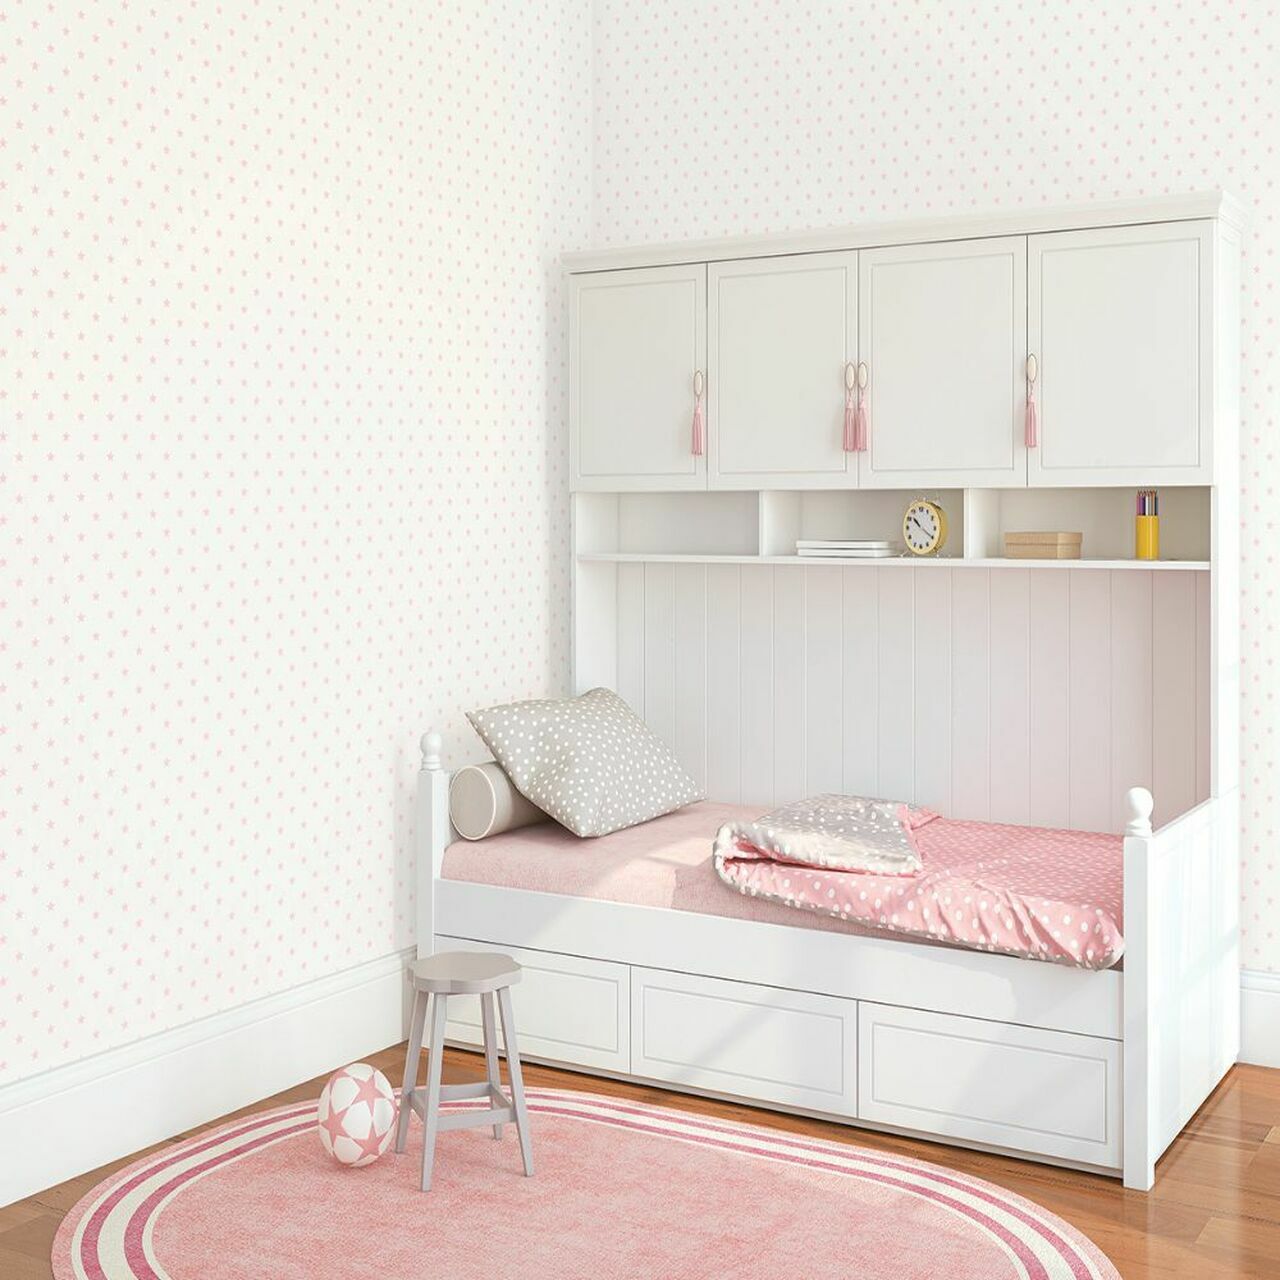 Just 4 Kids 2 Star Nursery Room Wallpaper - Gray